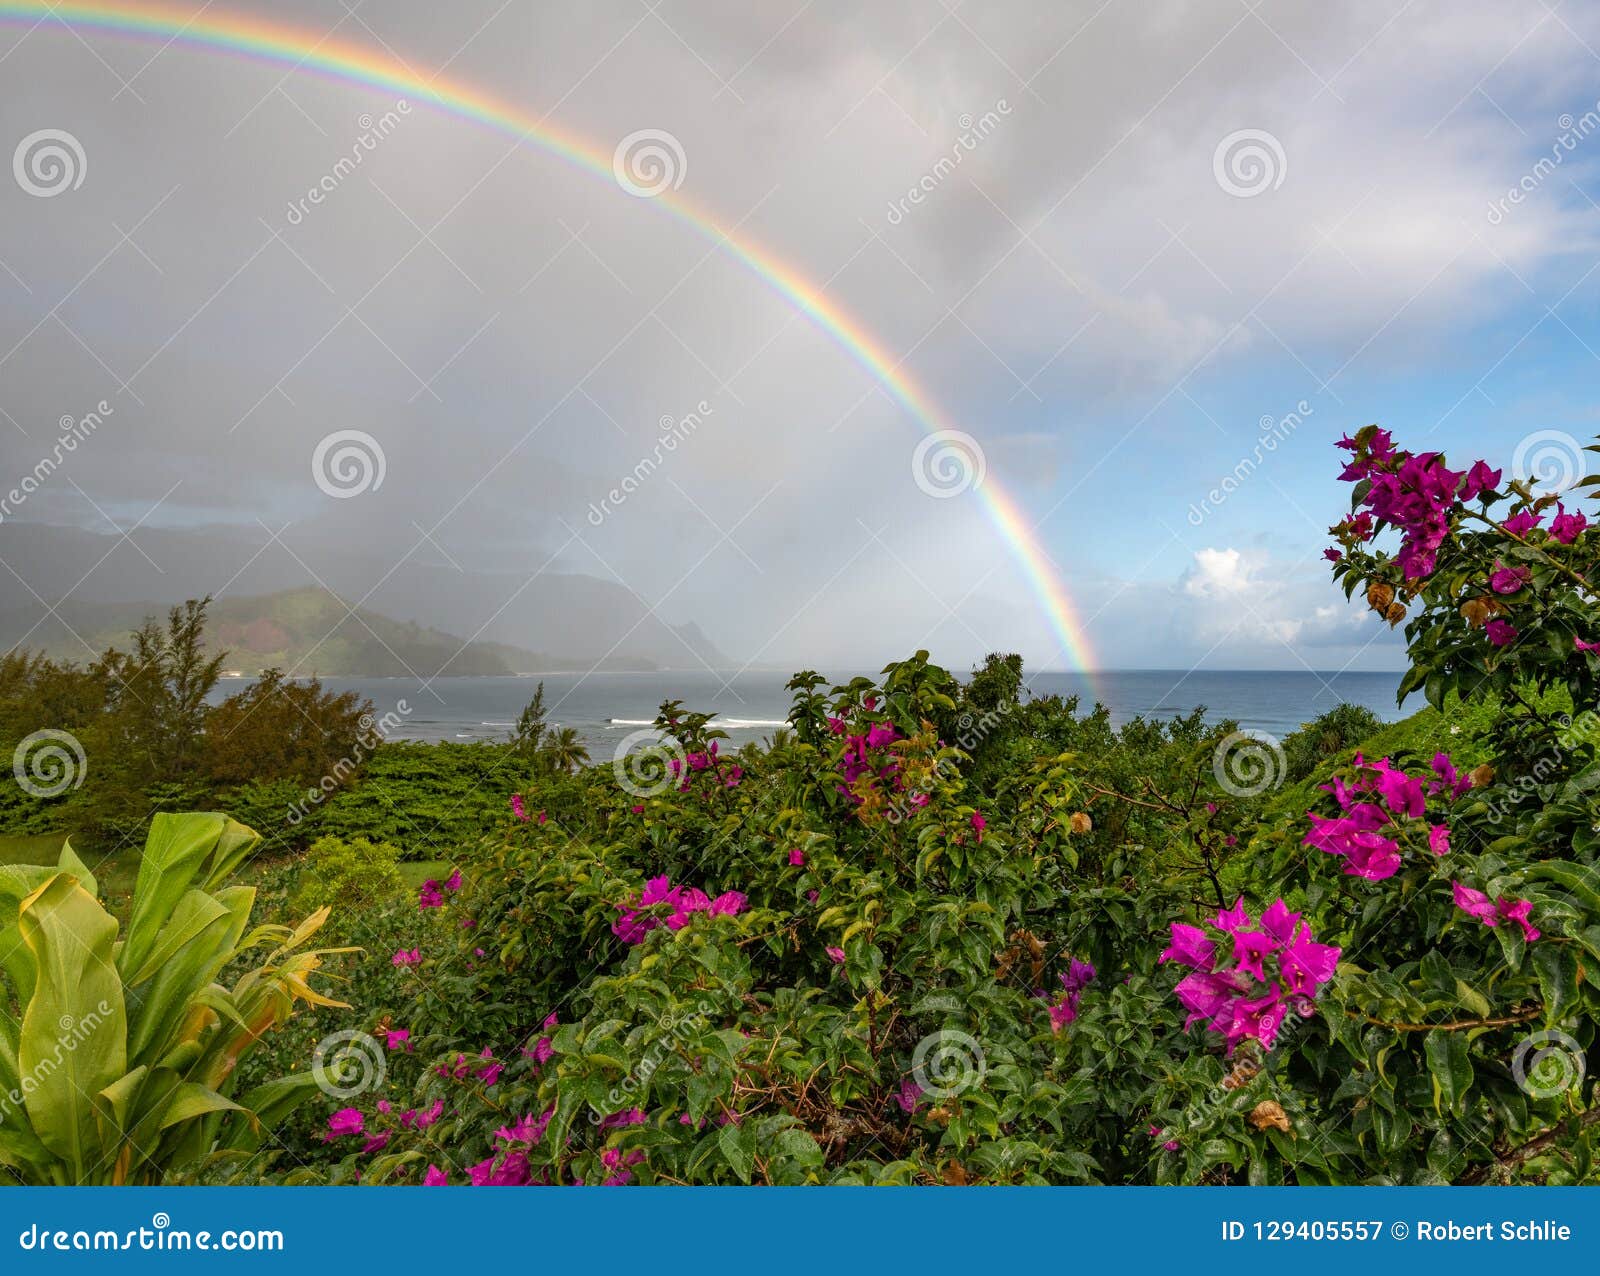 vibrant rainbow over ocean kauai, hawaii